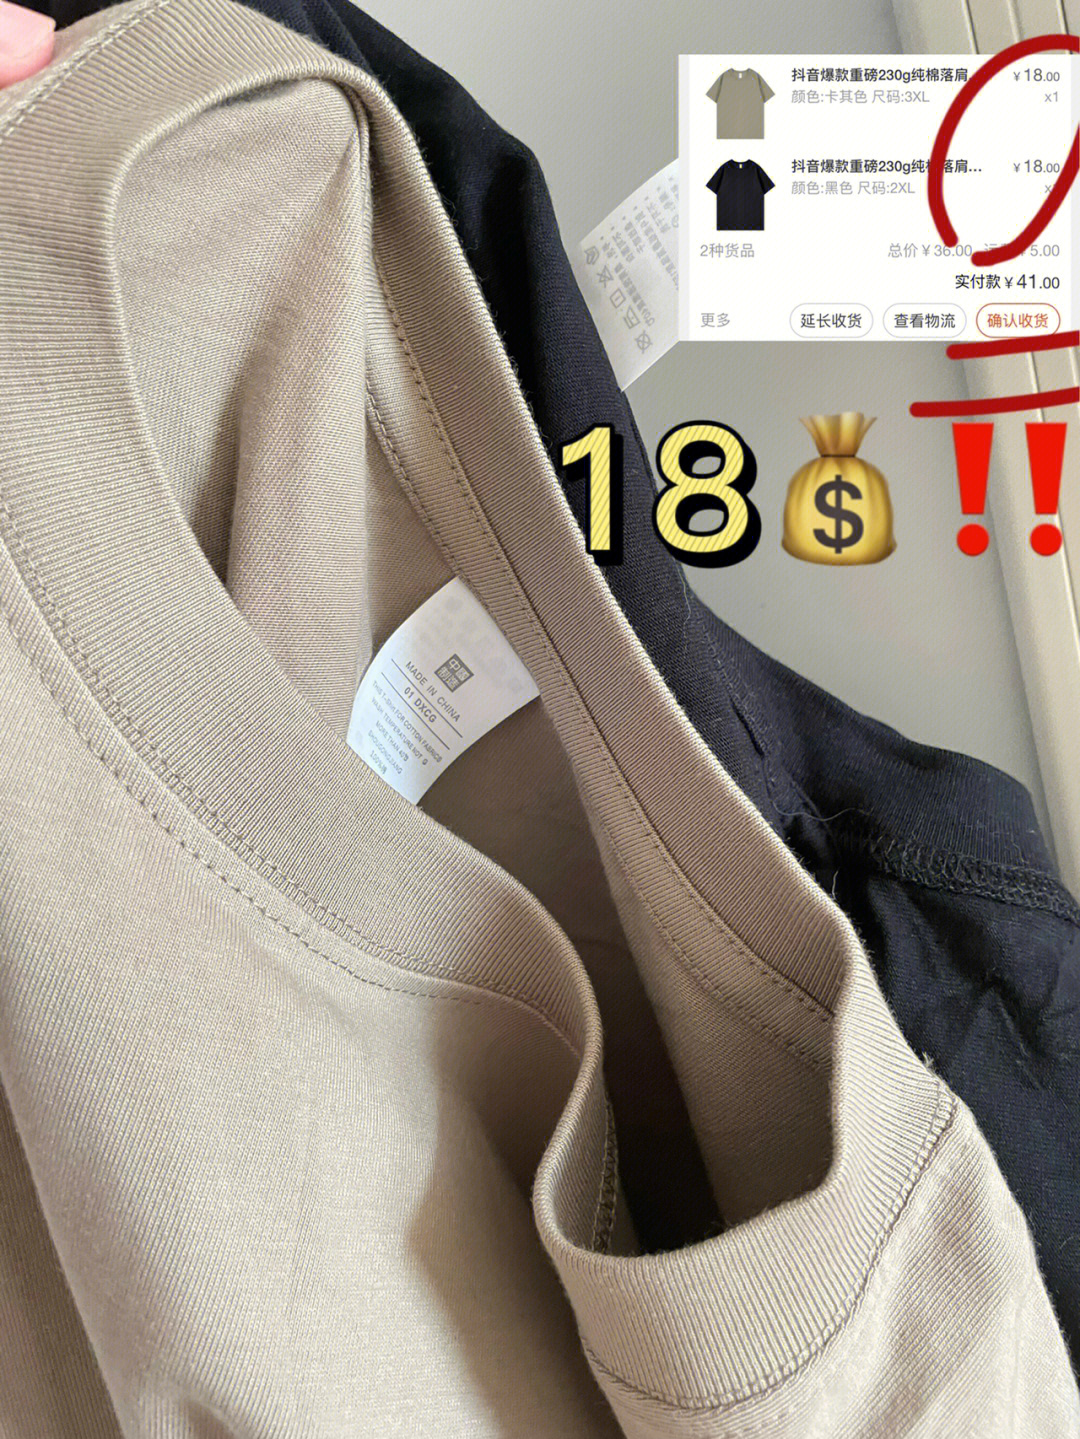 新疆棉惊喜,作为纯色t恤忠实爱好者,买过不少纯色t恤,从优衣库的99